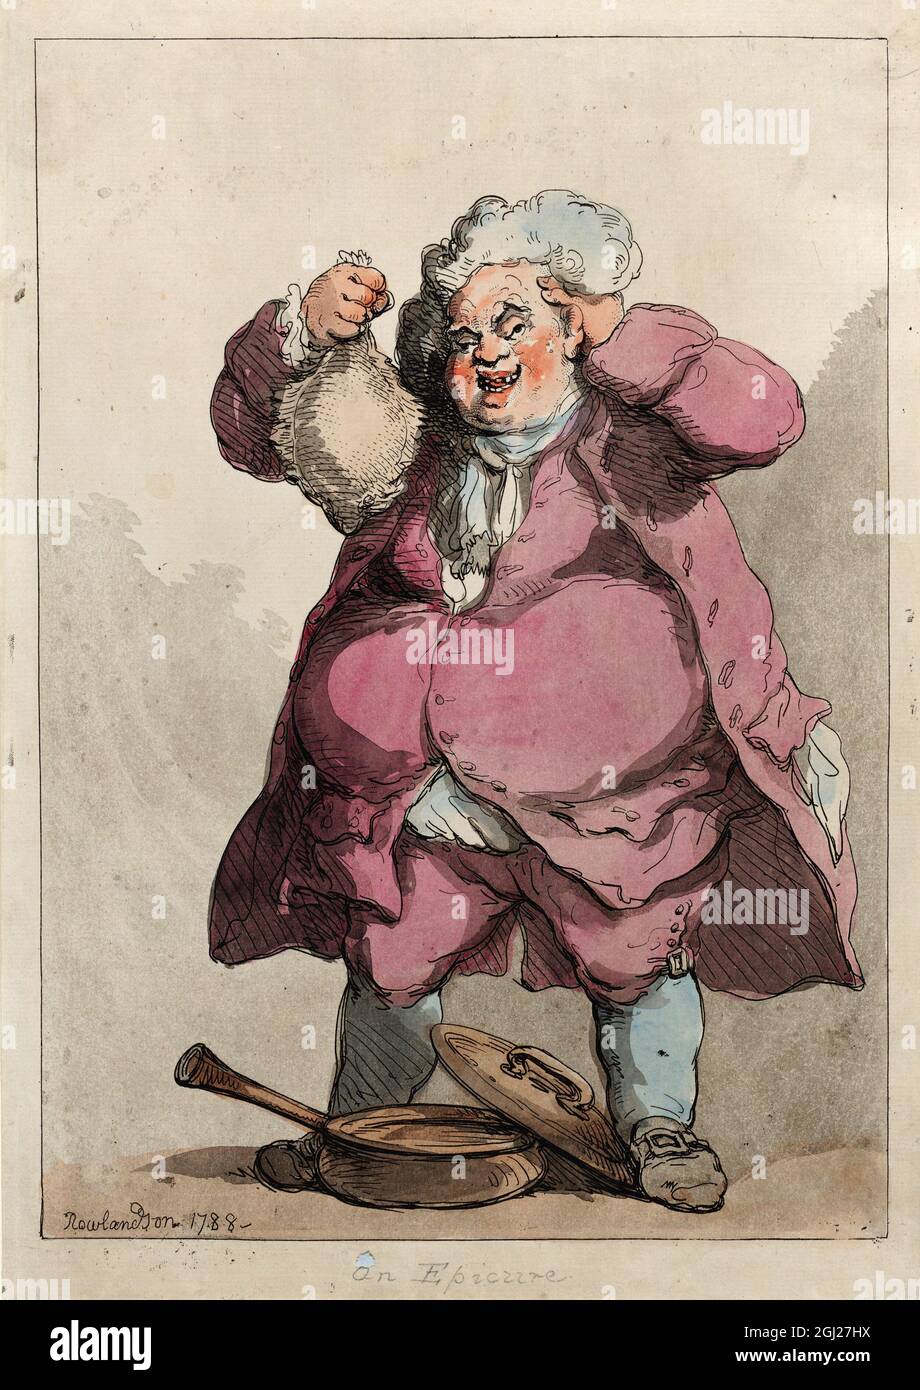 Un Epicure 1788 artiste: Thomas Rowlandson (1756-1827) artiste et caricaturiste anglais de l'ère géorgienne. Observateur social, il était un artiste prolifique et un imprimeur. Crédit : Thomas Rowlandson/Alamy Banque D'Images